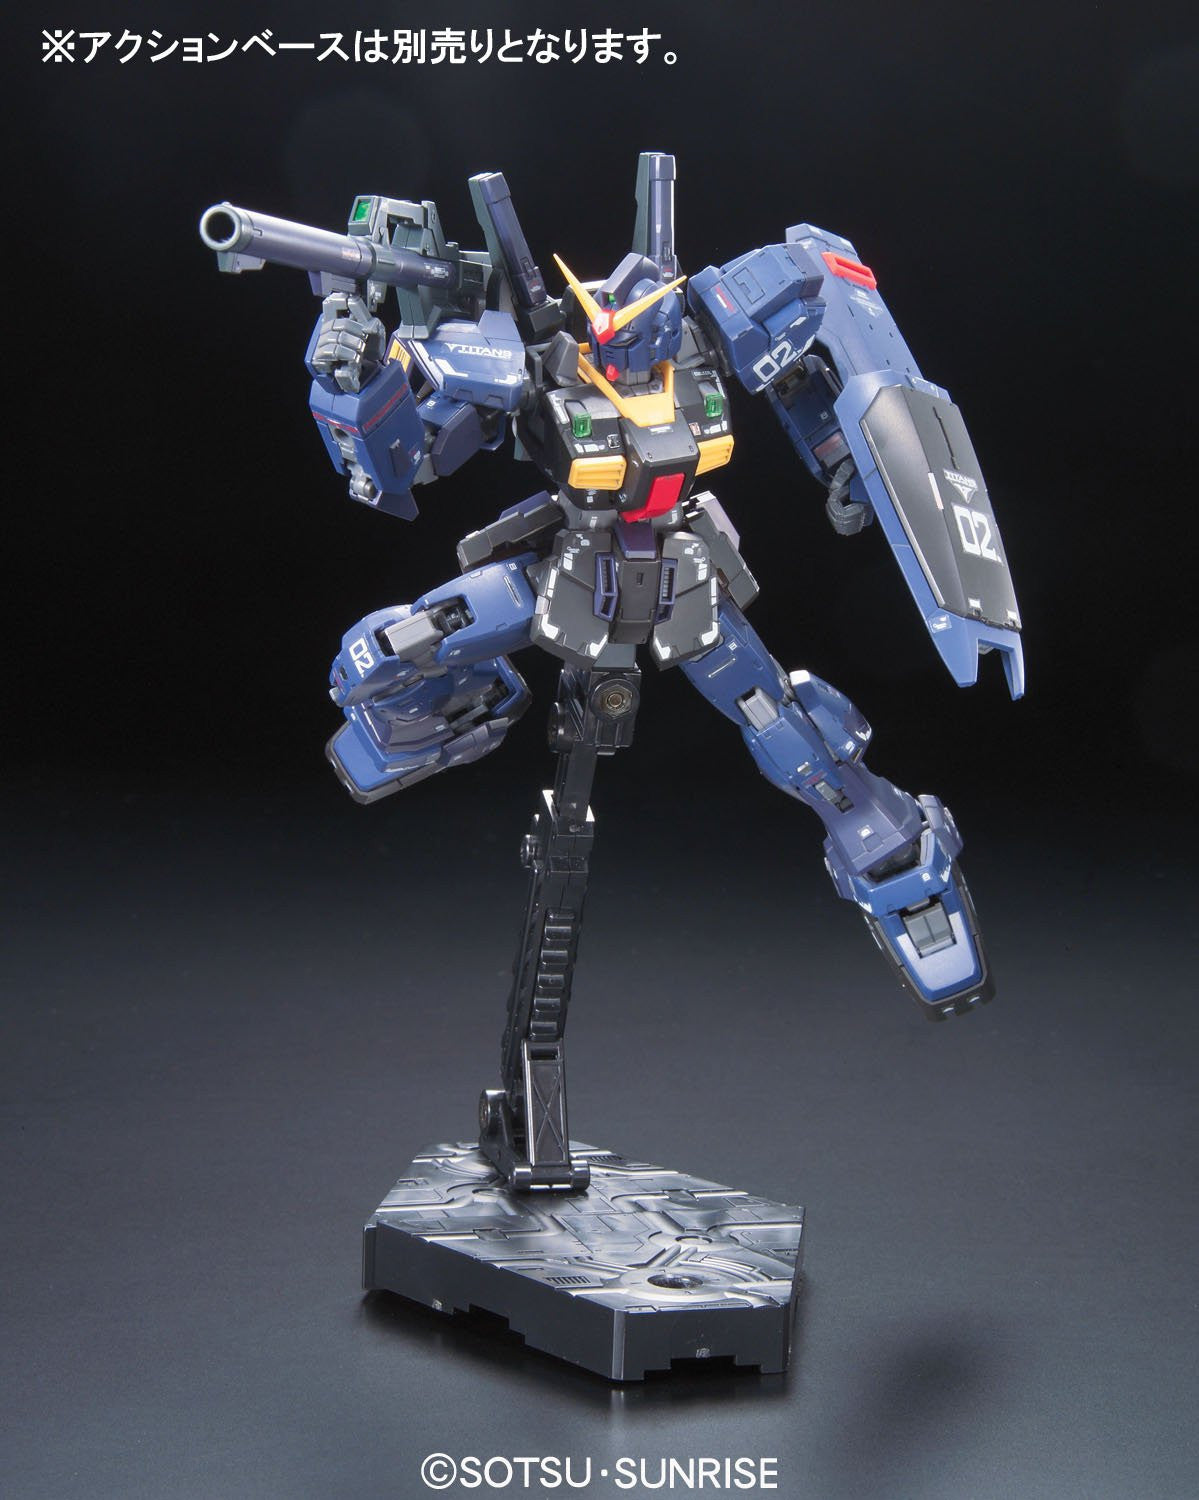 RG 1/144 #07 RX-178 Gundam Mk-II Titans